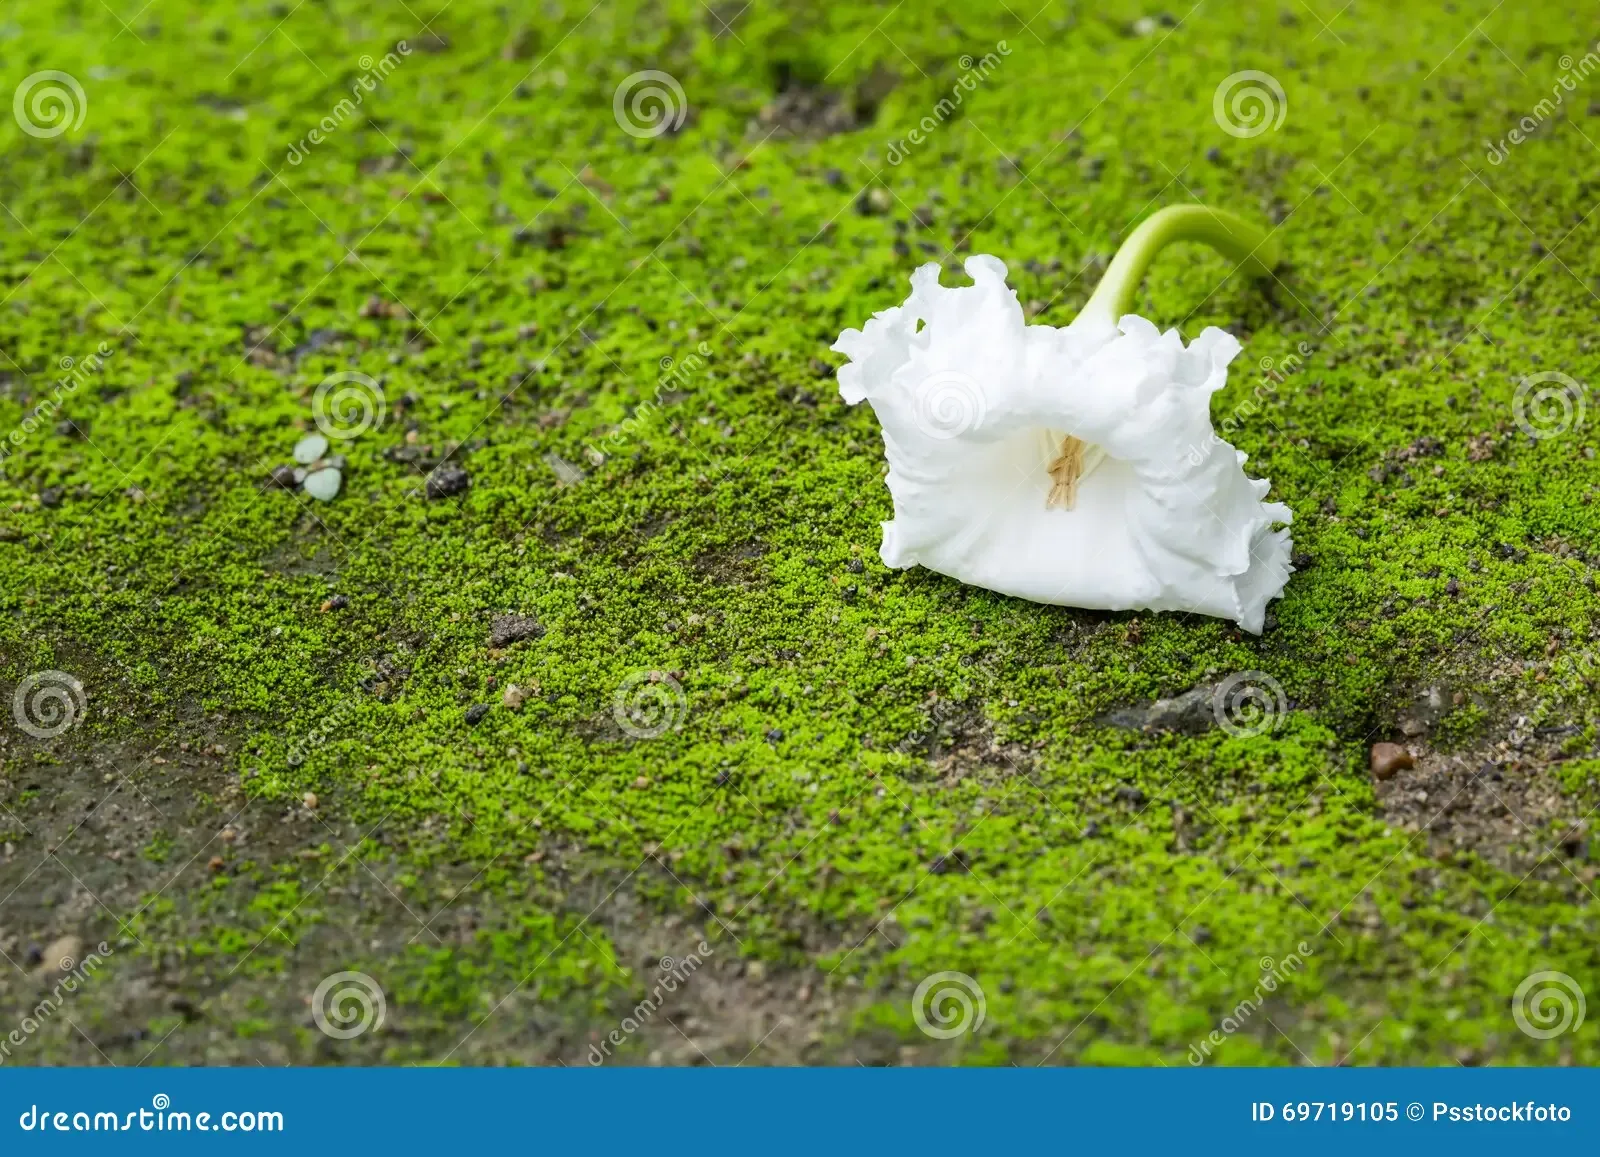 dolichandrone-serrulata-flower-white-green-moss-69719105.jpg